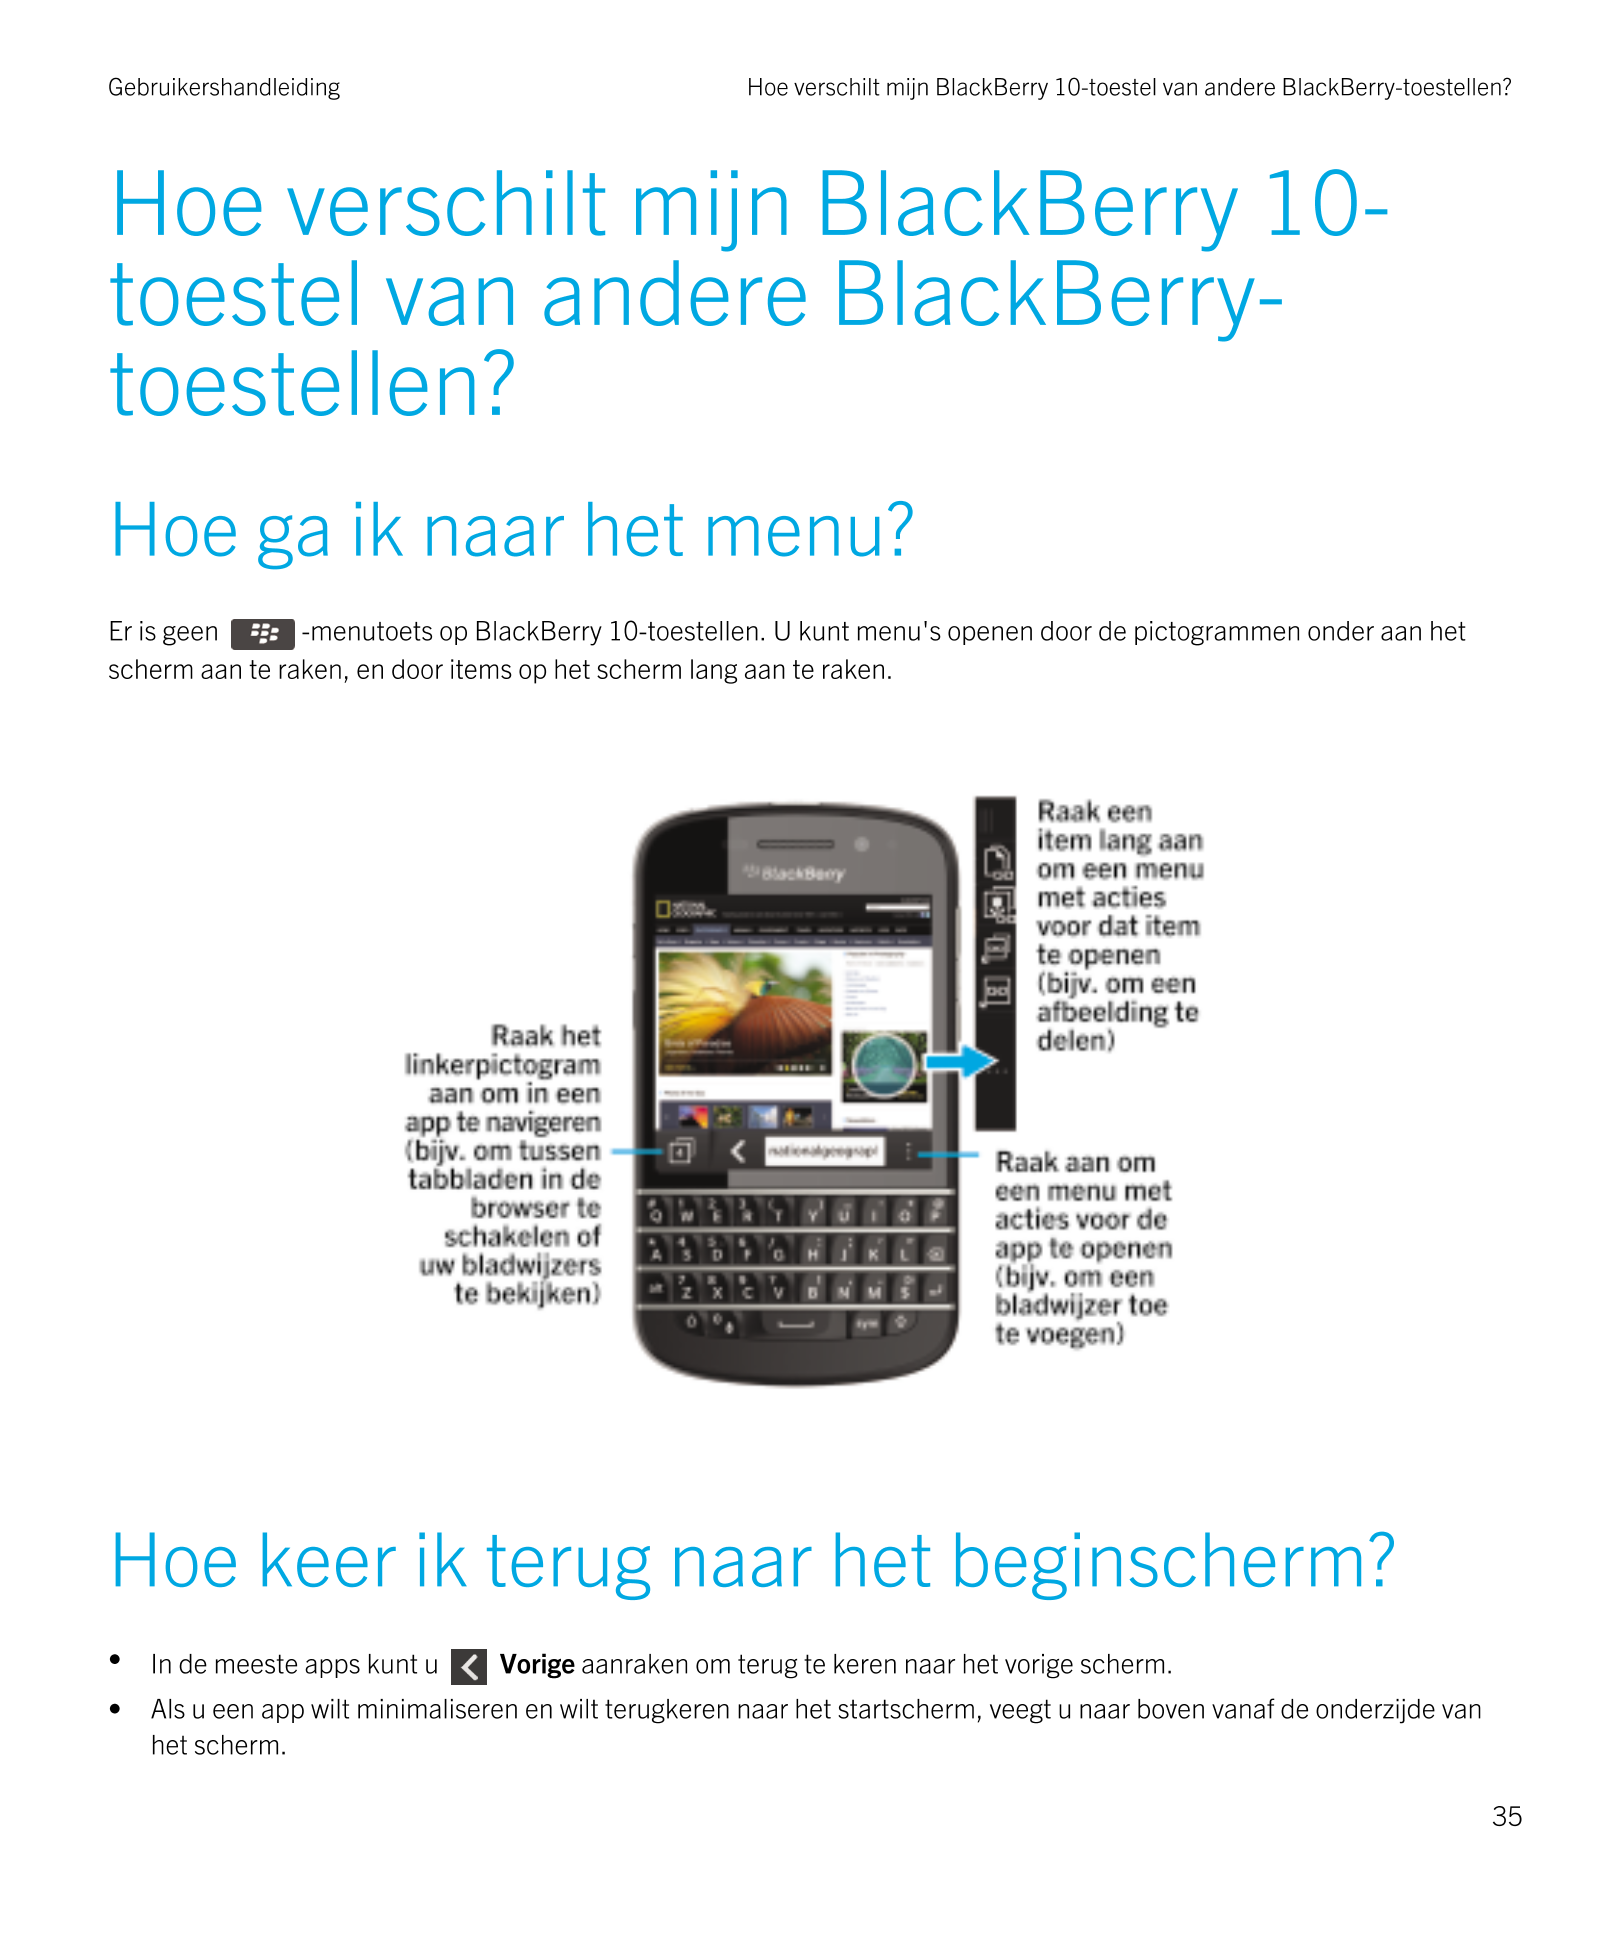 Gebruikershandleiding Hoe verschilt mijn BlackBerry 10-toestel van andere BlackBerry-toestellen?
Hoe verschilt mijn  BlackBerry 